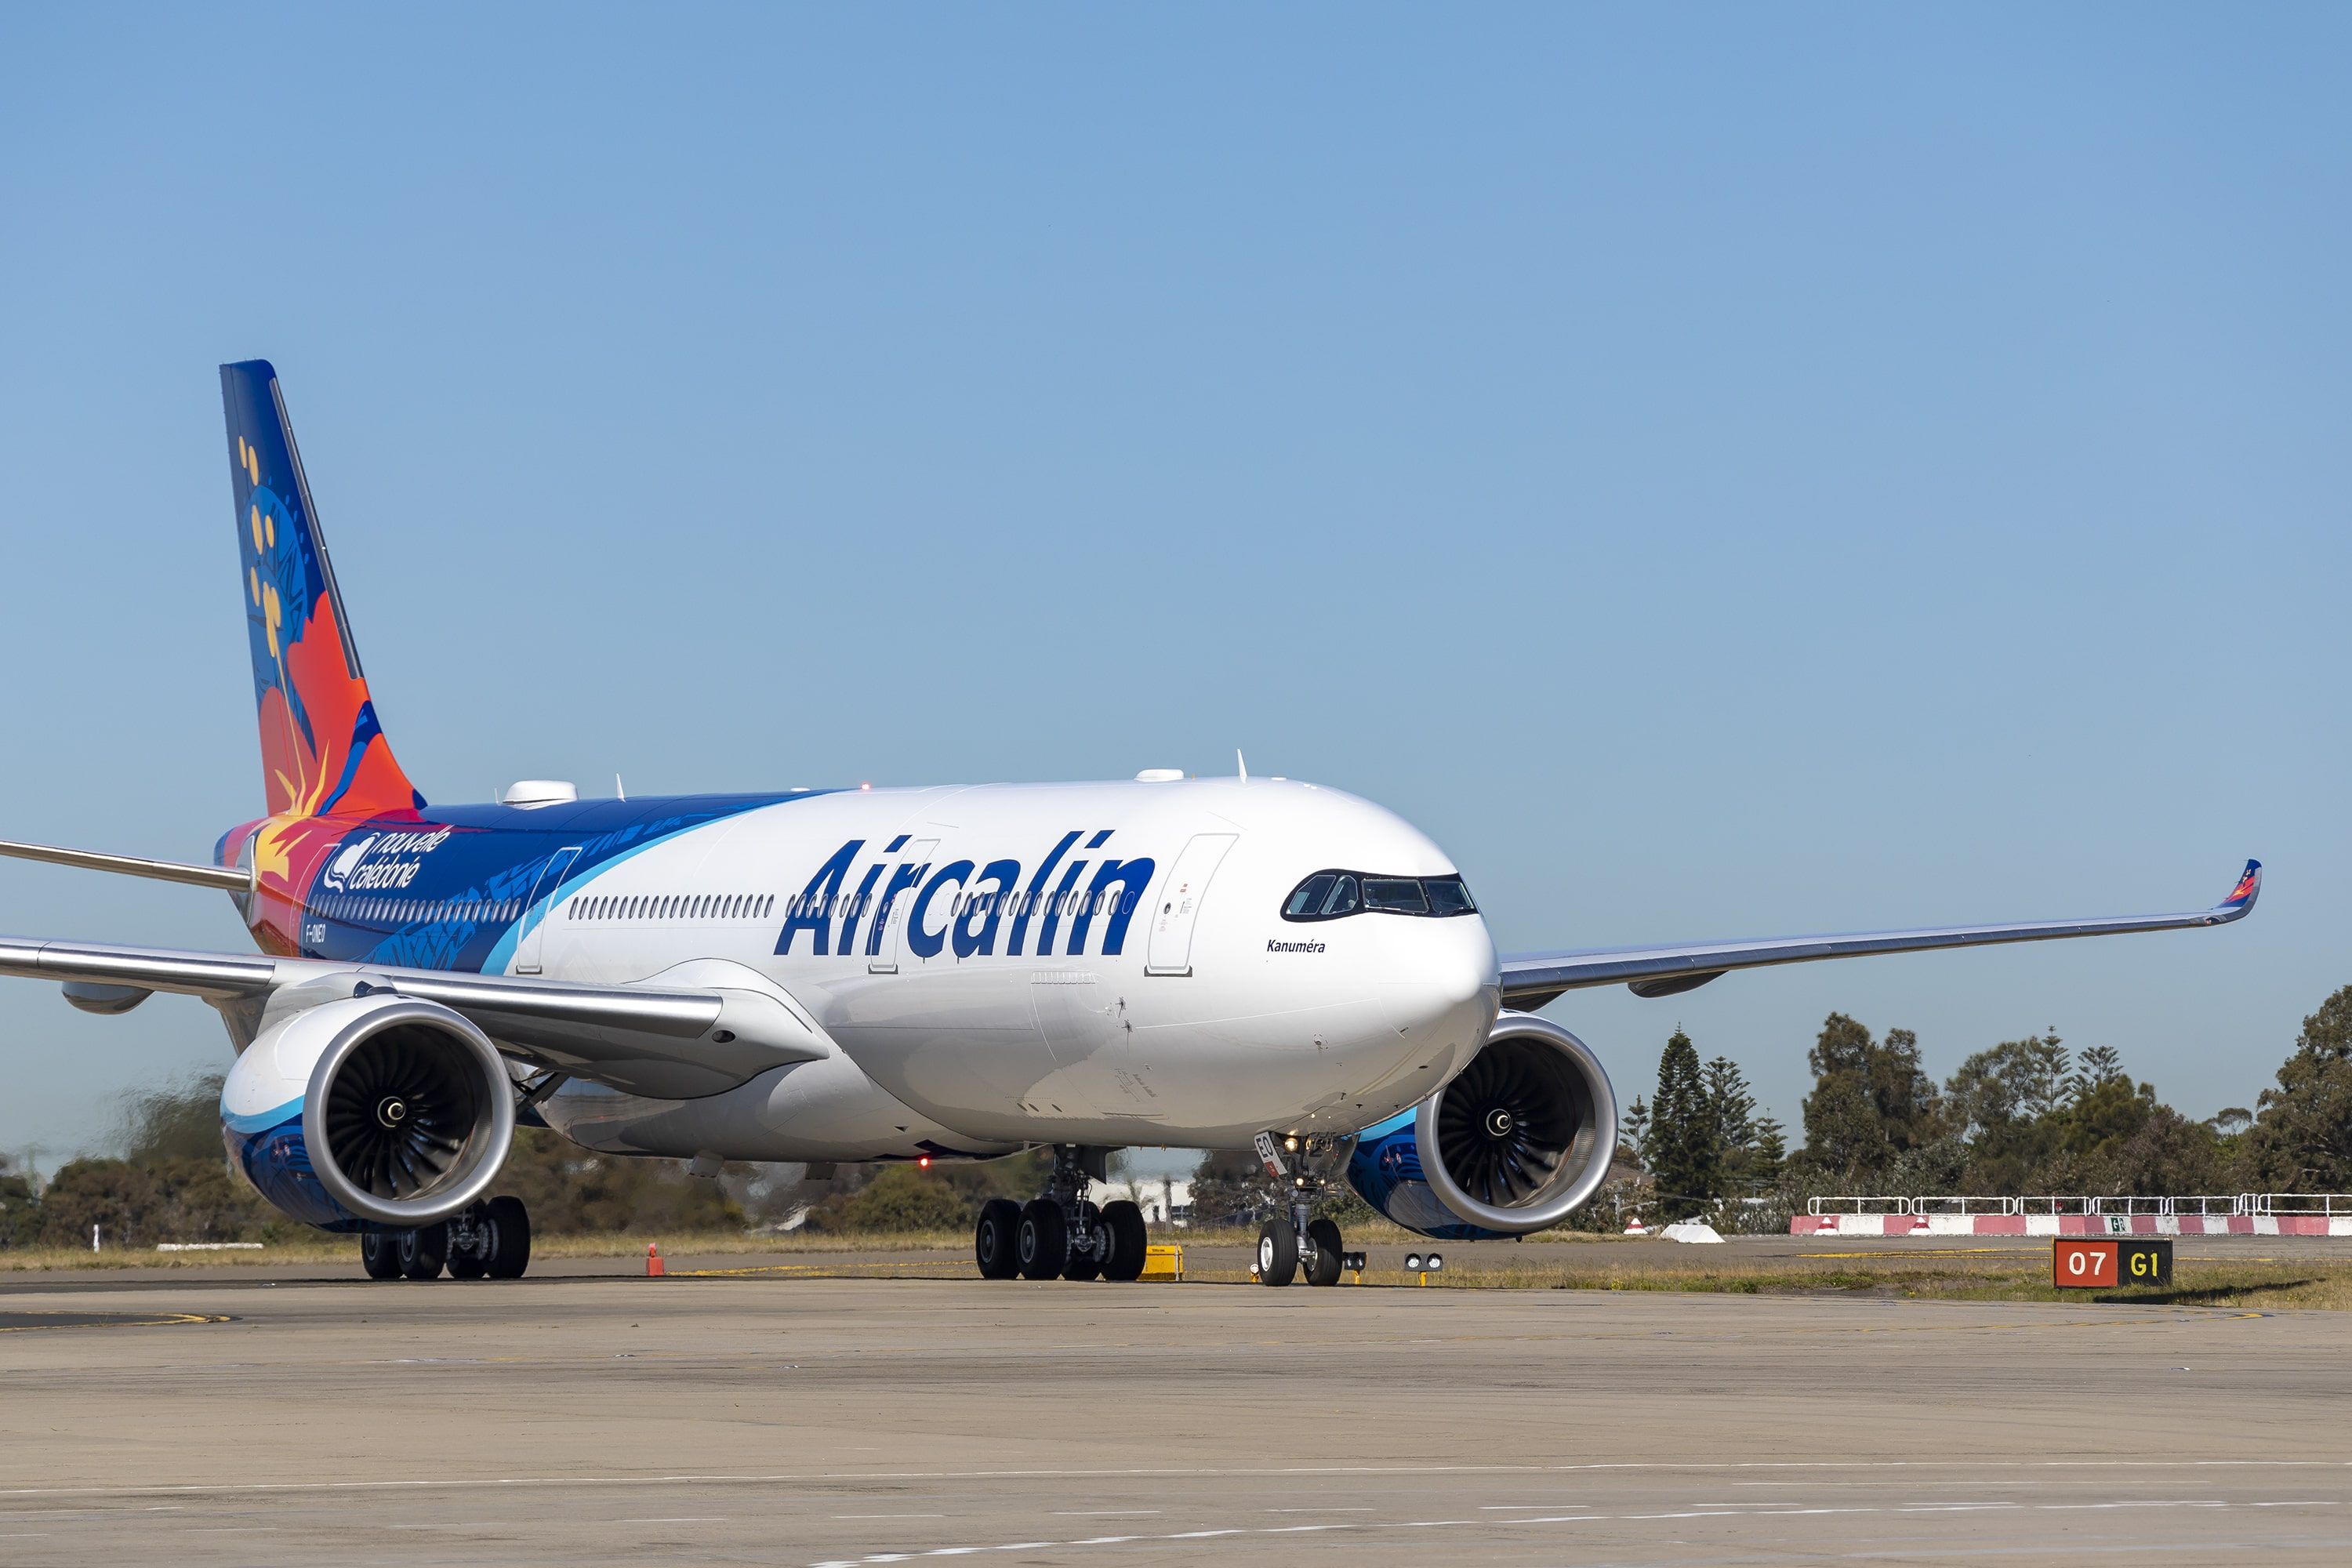 Aircalin Airbus A330-900 aircraft taxiing